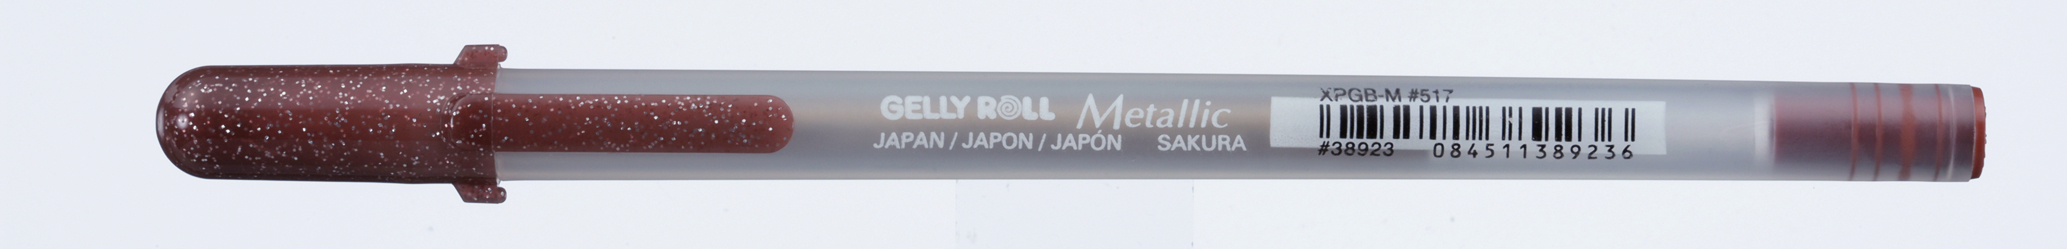 SAKURA Gelly Roll 0.5mm XPGBM517 Metallic sepia Metallic sepia